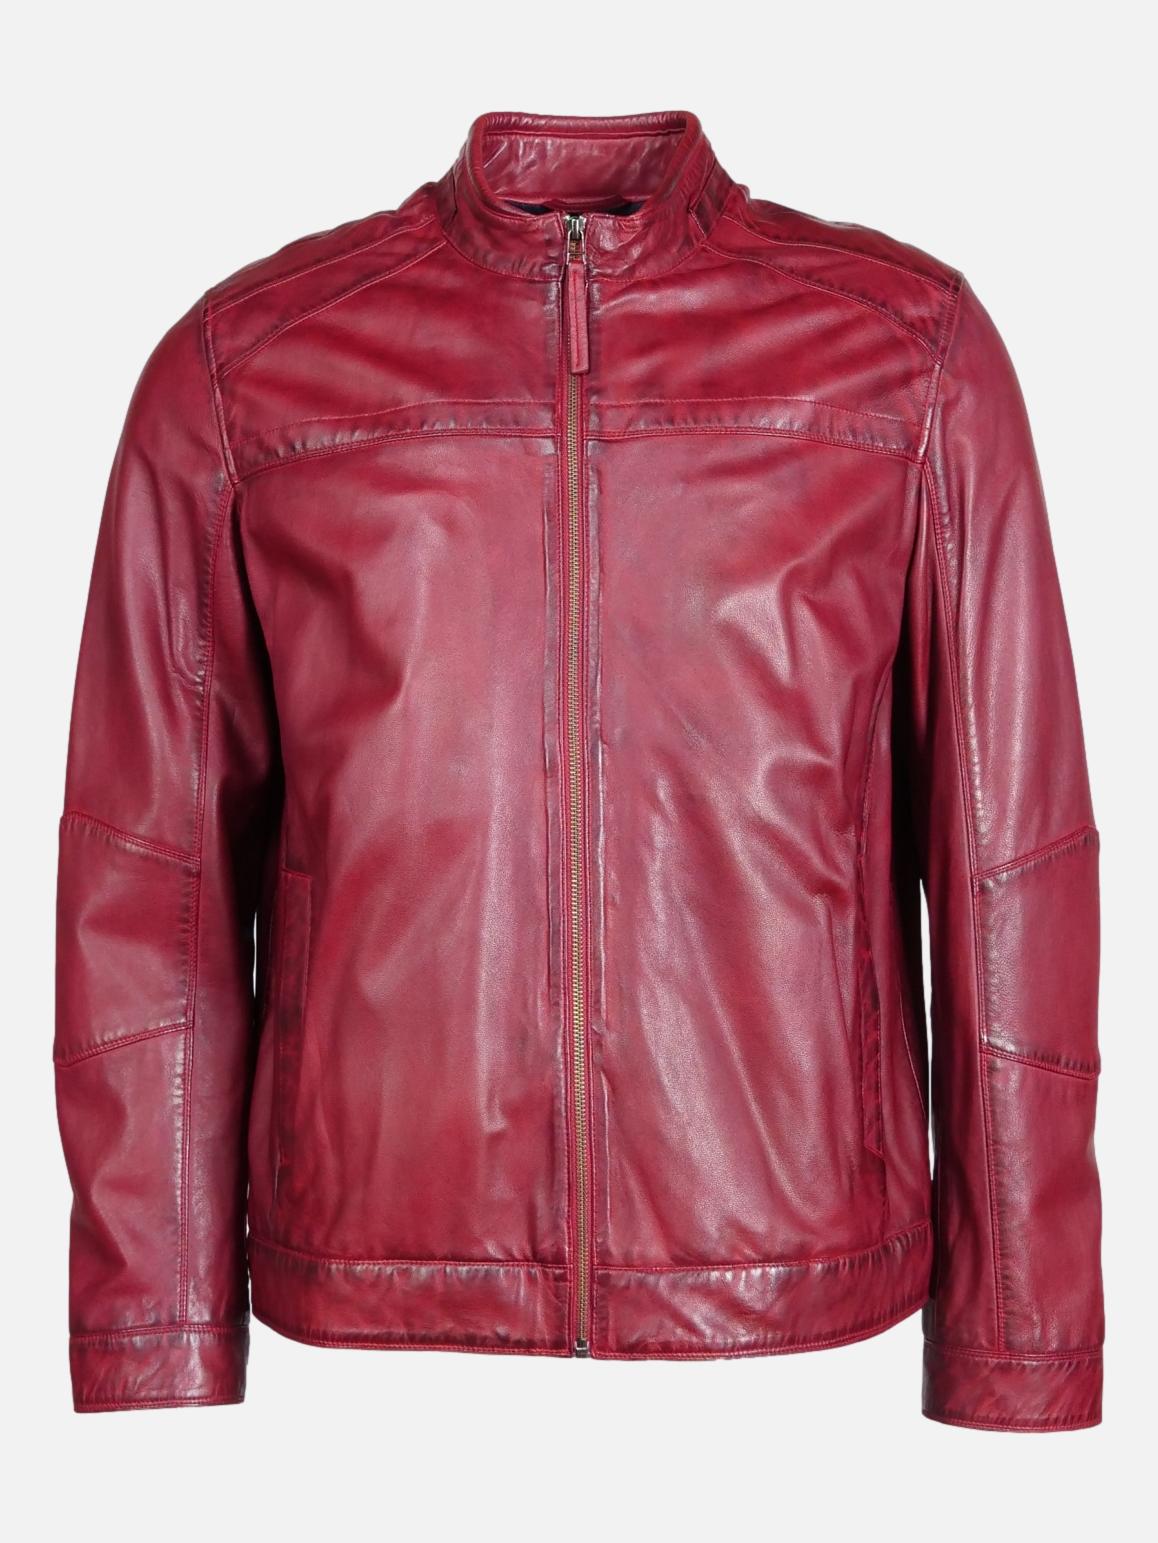 New Ferome, 70 cm. - Lamb Malli Leather - Man - Copper Red